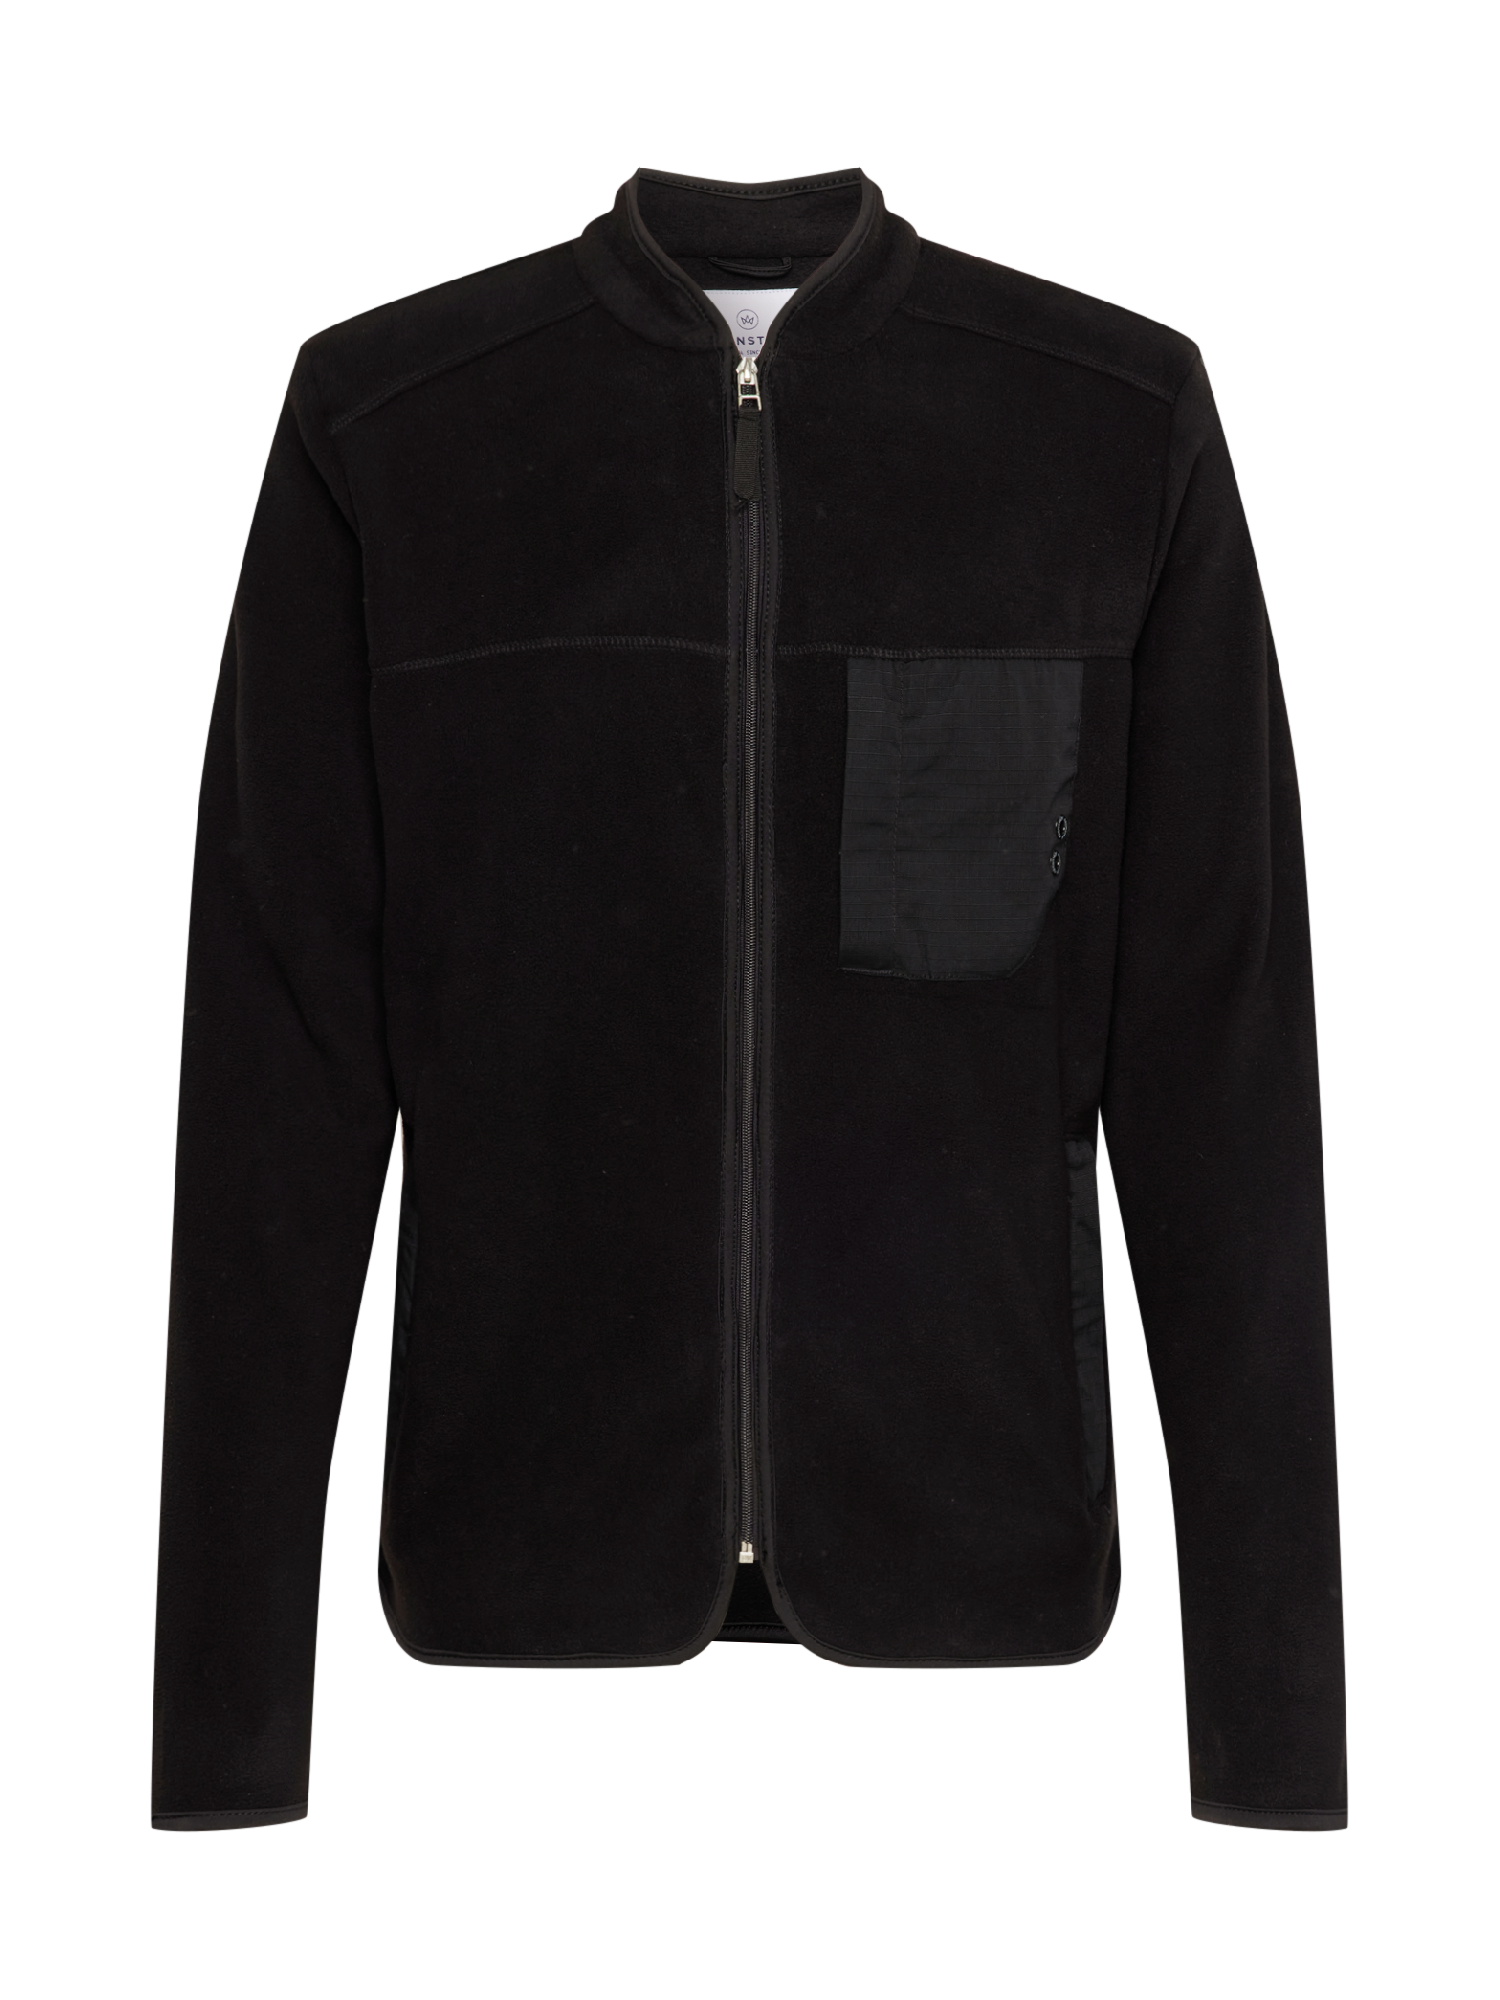 Bluzy Mężczyźni Kronstadt Bluza polarowa Hayes w kolorze Czarnym 